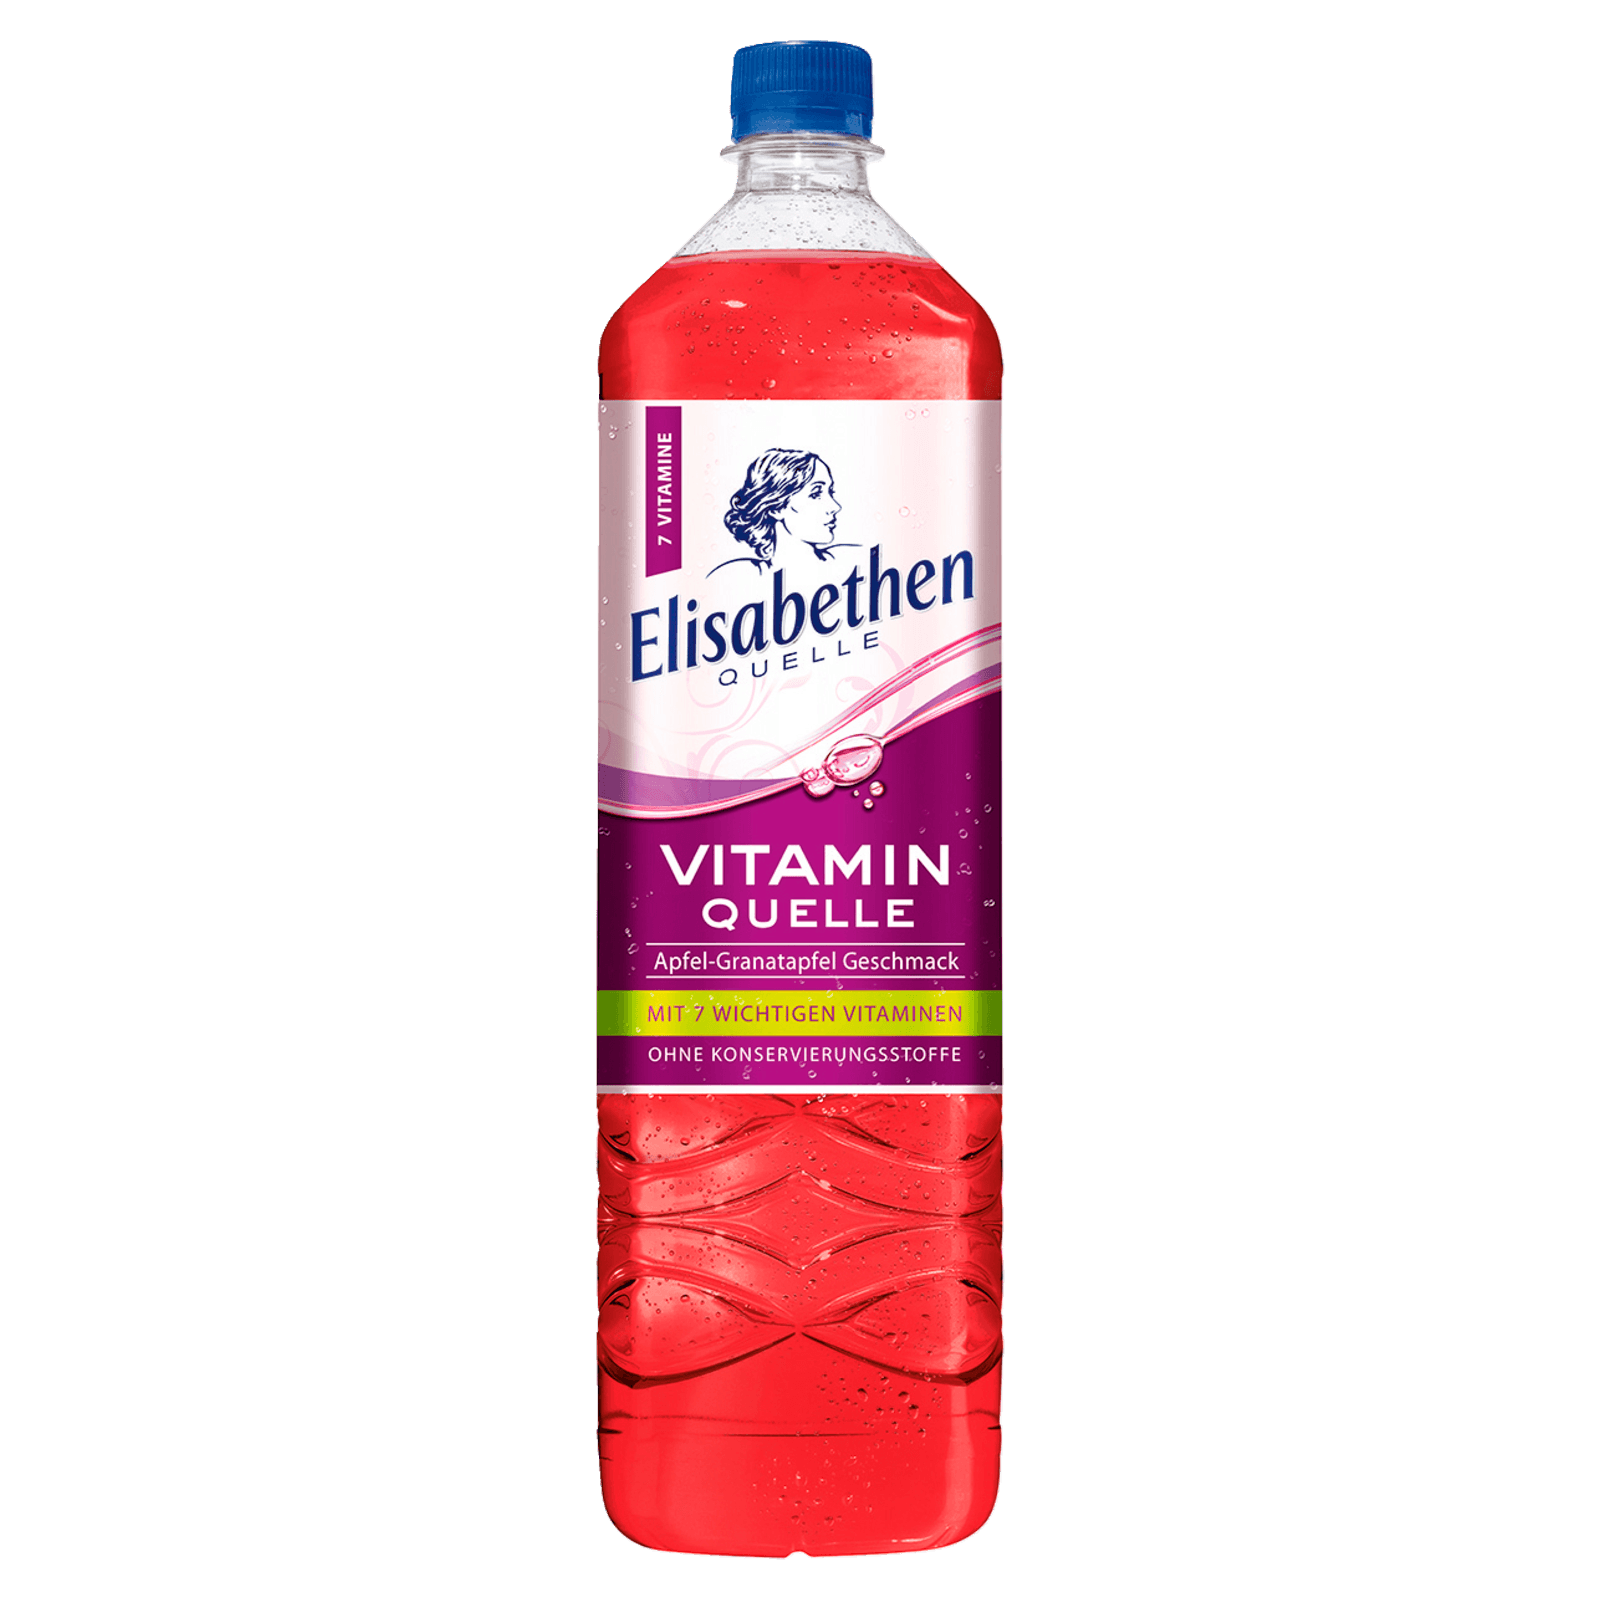 Elisabethen Quelle Vitamin Quelle Apfel-Granatapfel Geschmack 1,5l  für 1.65 EUR